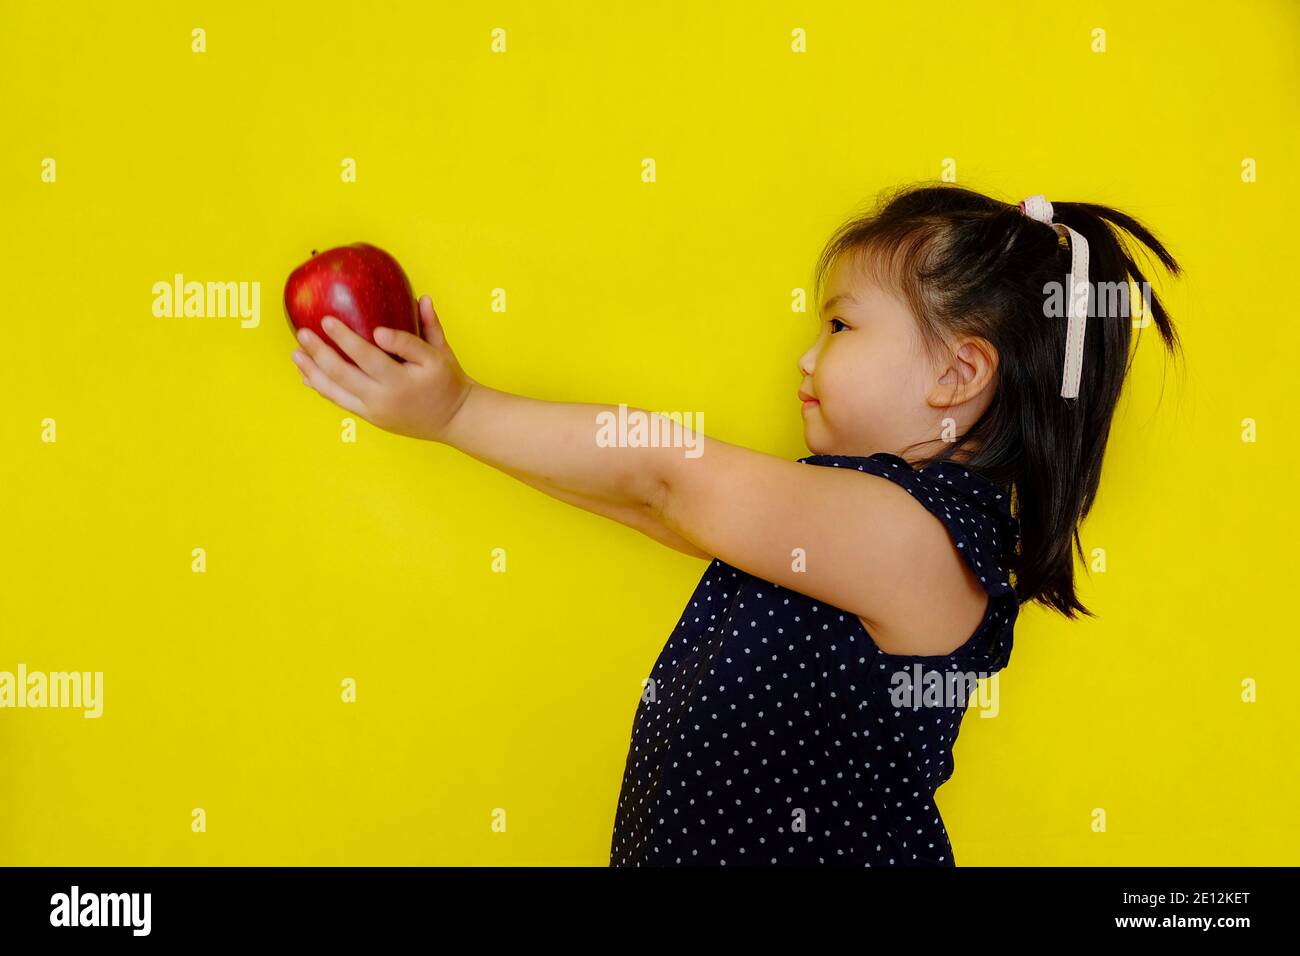 Une jolie jeune fille asiatique à l'école, donnant une pomme rouge à son professeur comme cadeau, souriant. Arrière-plan jaune vif. Banque D'Images